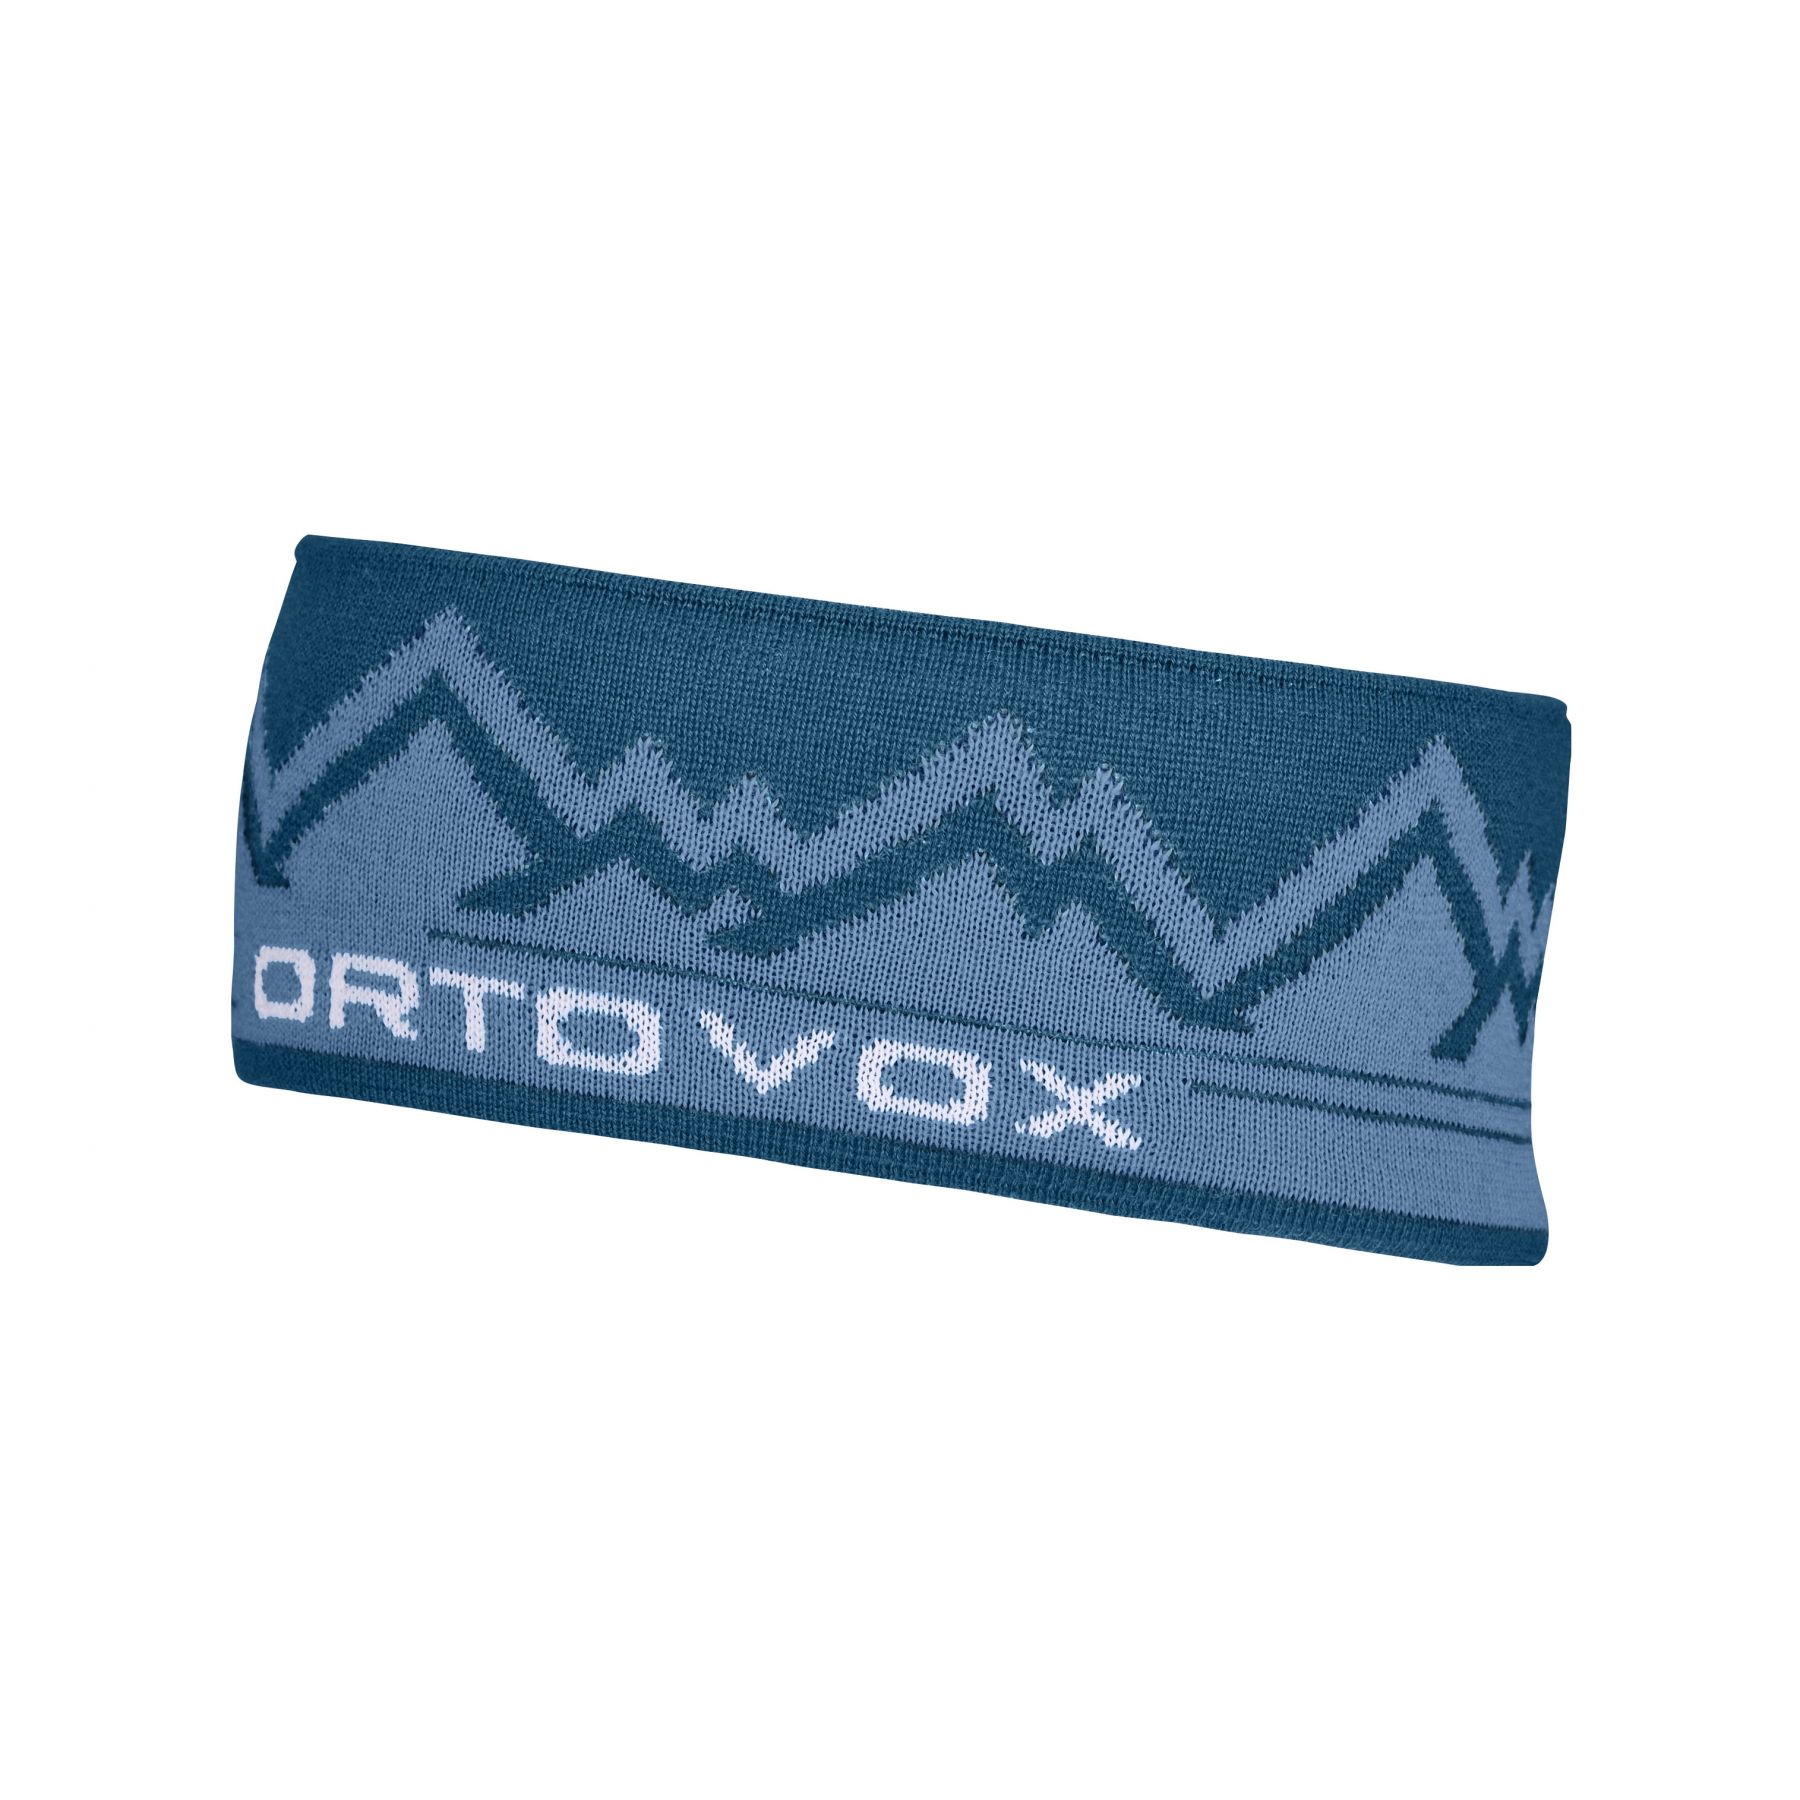 Billede af Ortovox Peak, pandebånd, blå hos AktivVinter.dk